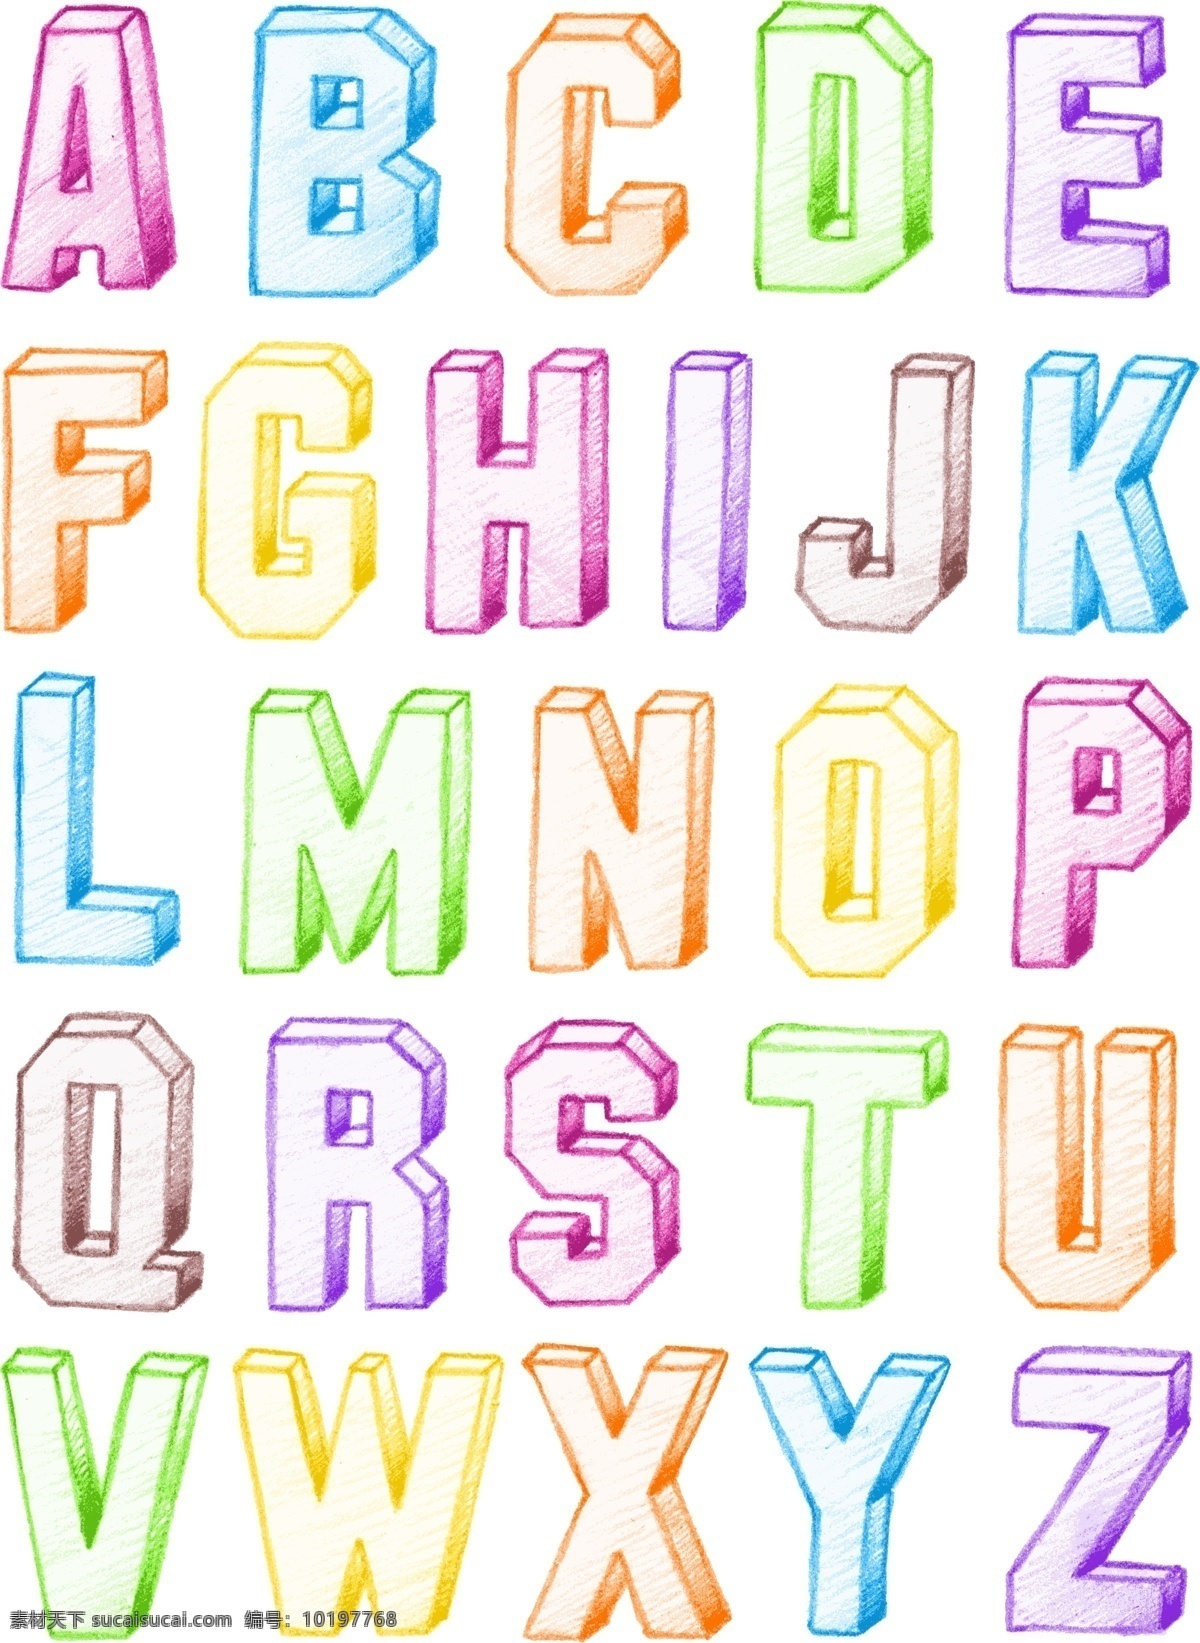 创意 字母 字体 矢量 集 字体设计 字体素材 矢量字体 艺术字体 英文 英文字母 字母设计 立体字体 创意字体 书画文字 文化艺术 矢量素材 白色